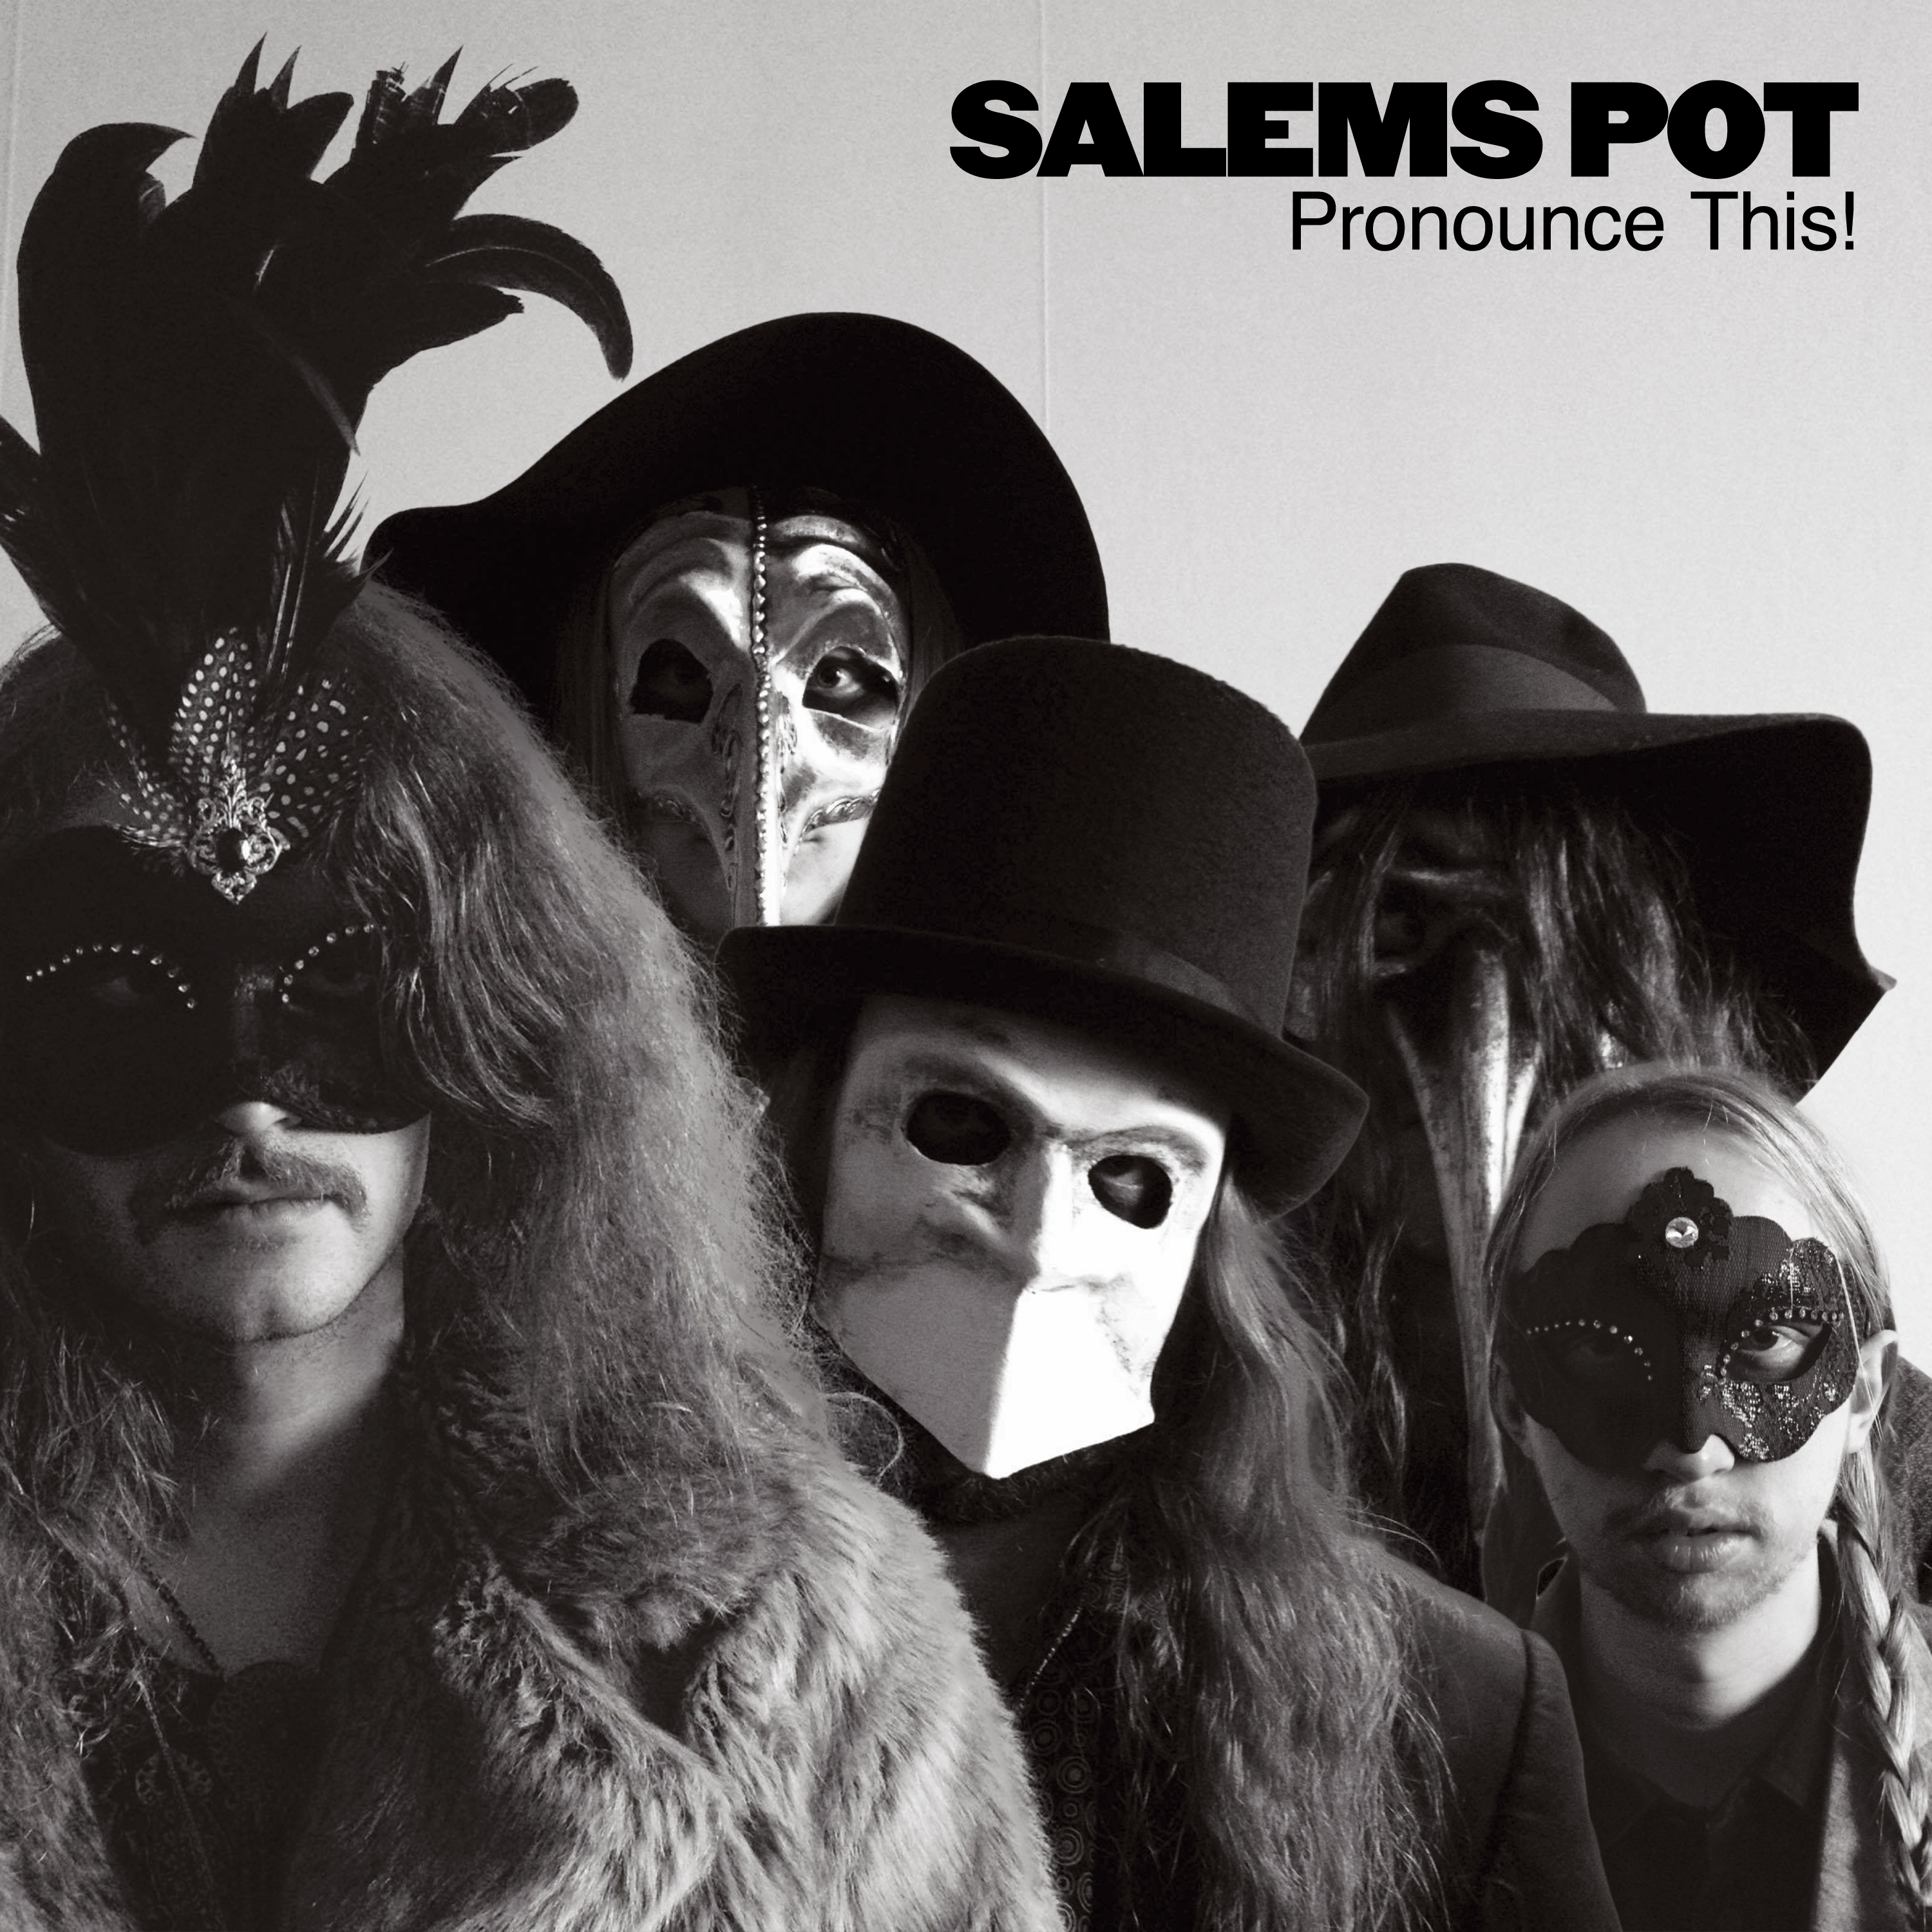 Salem’s Pot – Pronounce This!